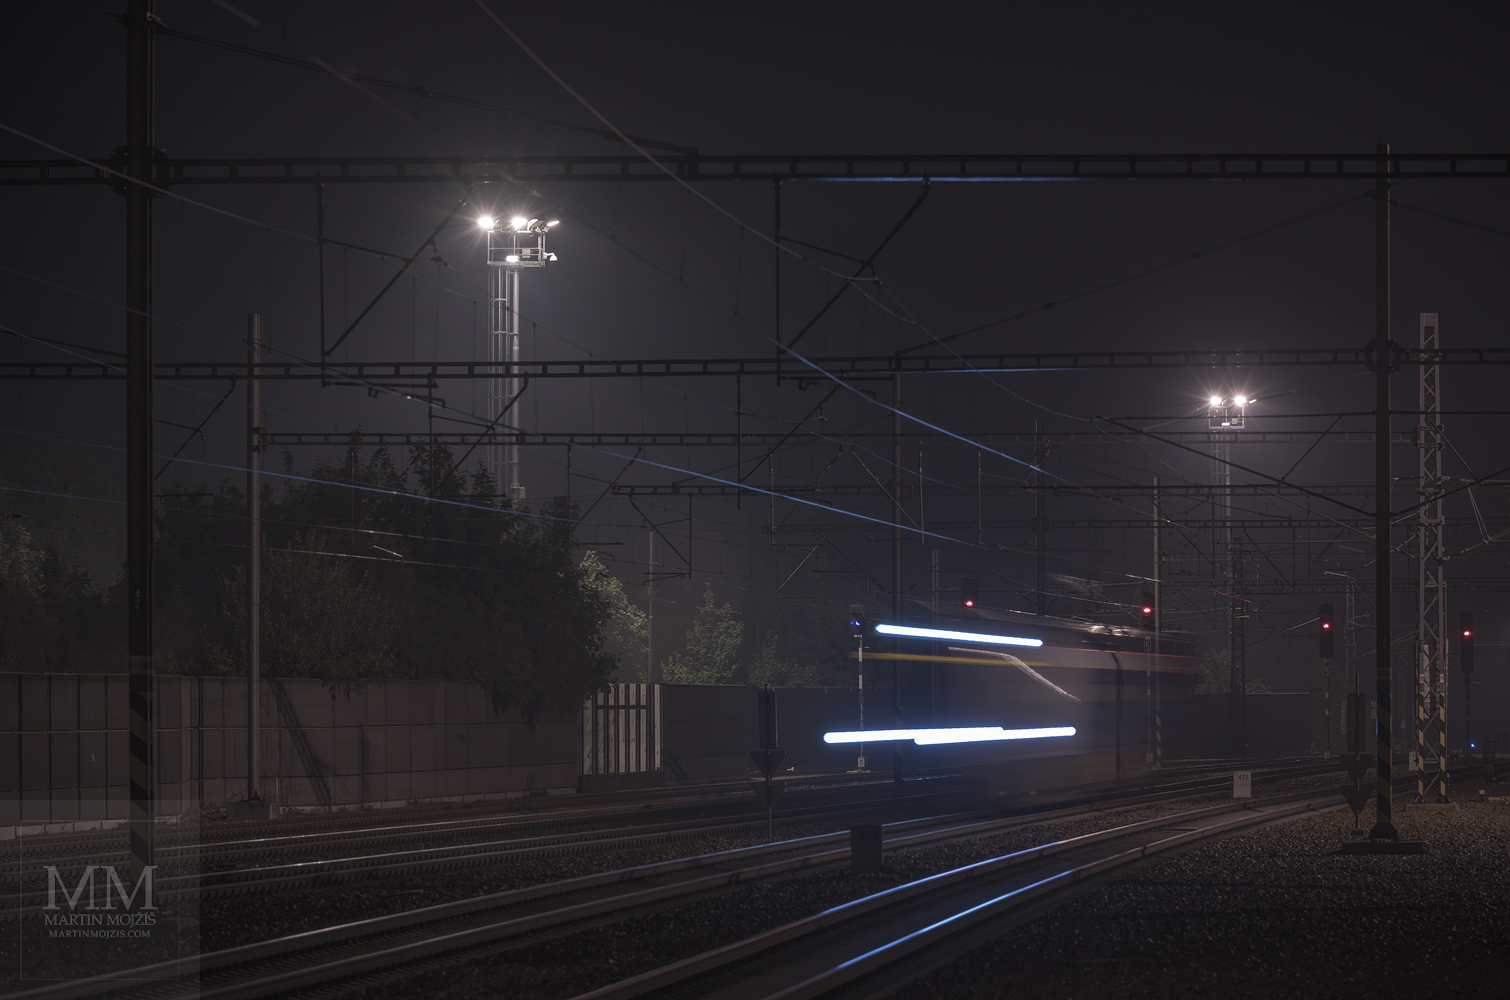 Lokomotiva jedoucí po noční trati. Umělecká fotografie s názvem CESTA NOCÍ. Fotograf Martin Mojžíš.